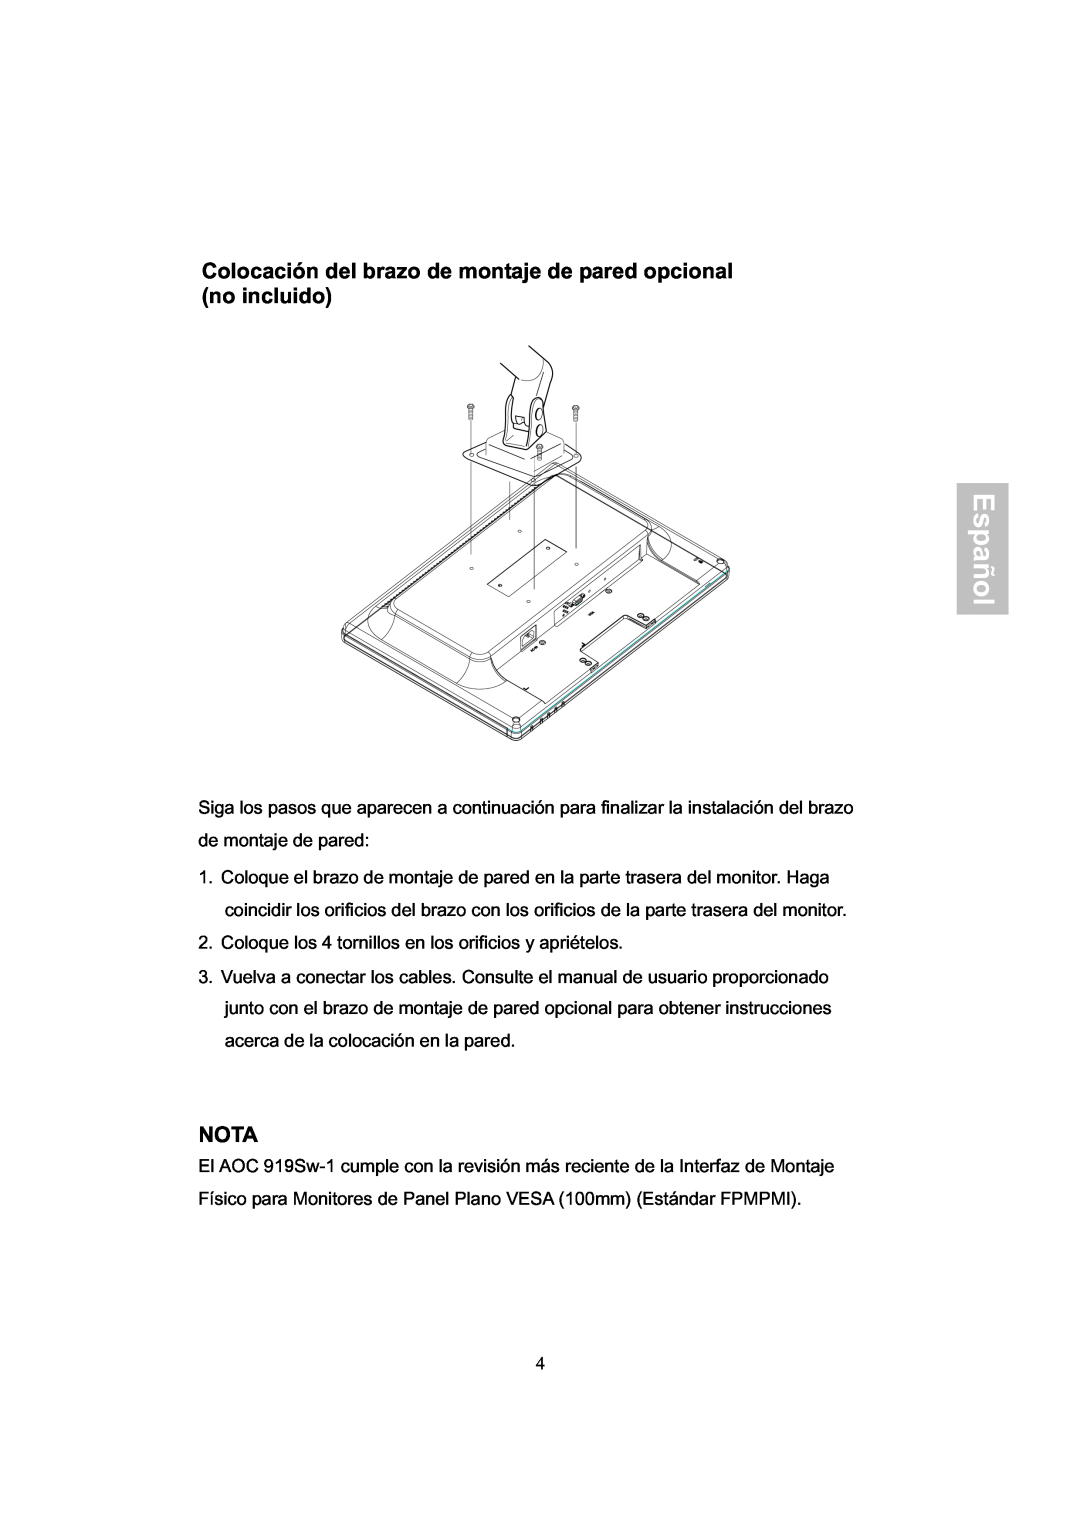 AOC 919Sw-1 manual Colocación del brazo de montaje de pared opcional no incluido, Nota, Español 